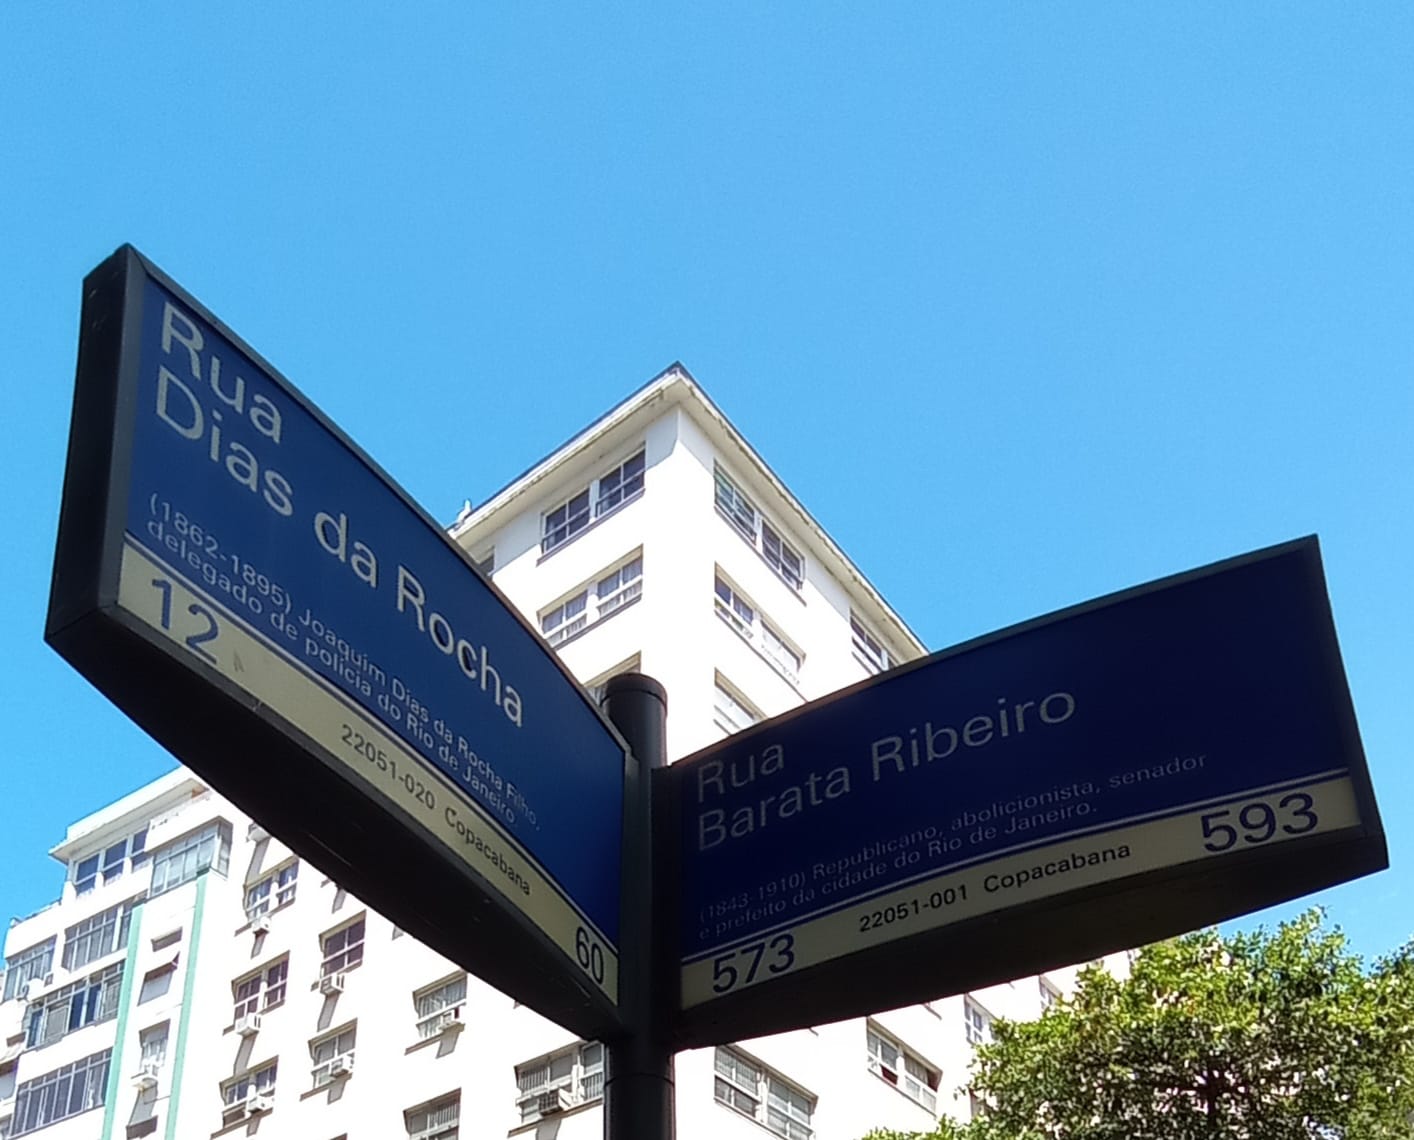 Esquina da Rua Dias da Rocha com a Rua Barata Ribeiro